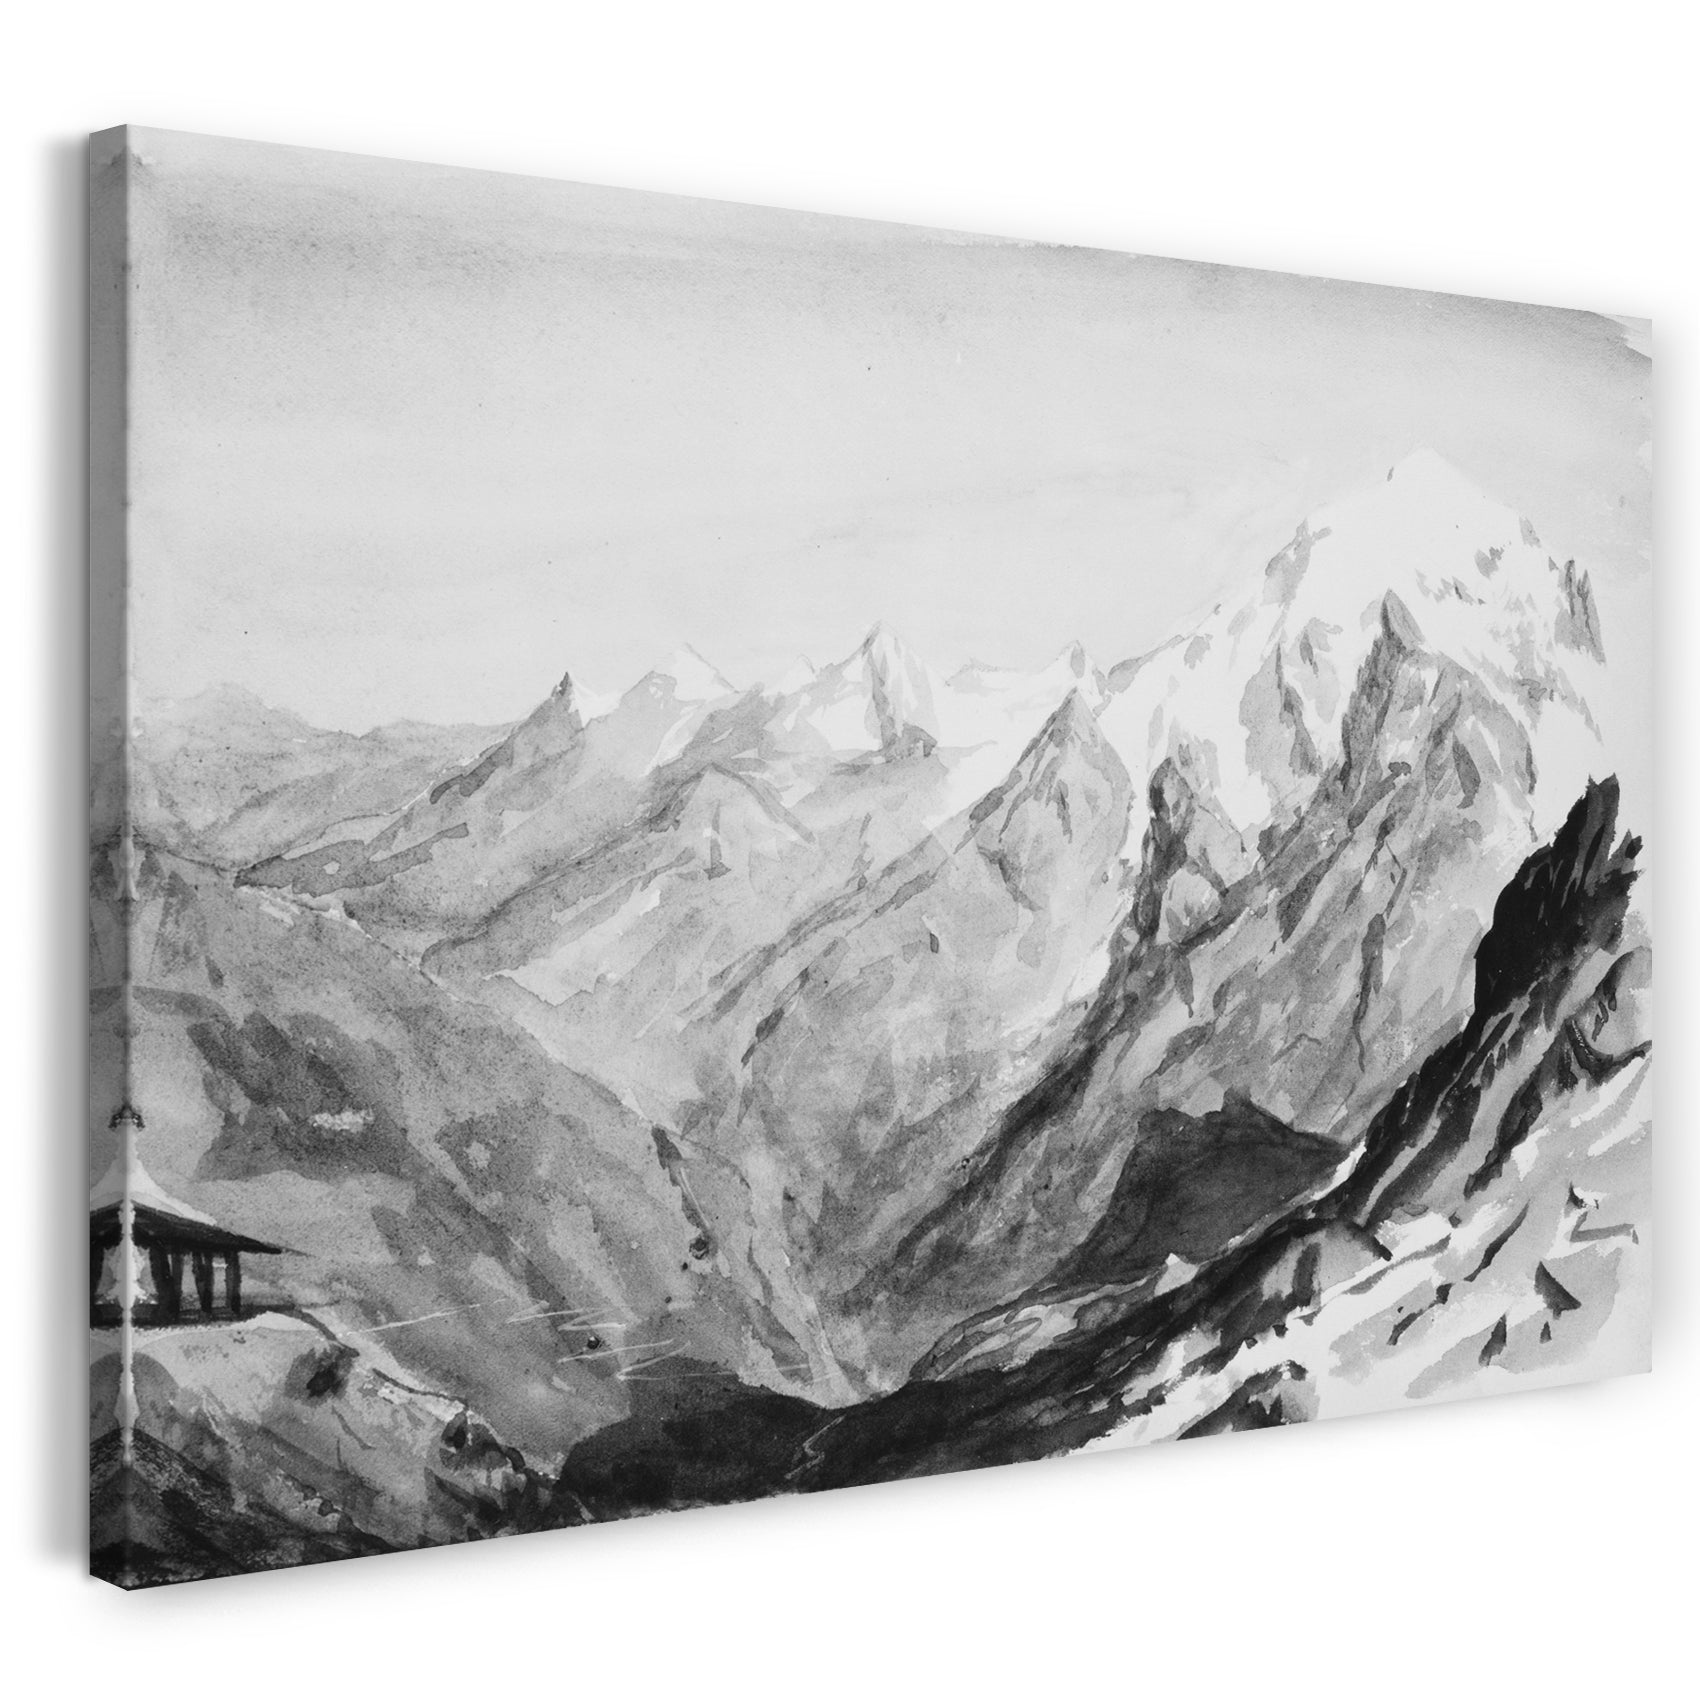 Leinwandbild John Singer Sargent - Ortler Spitz vom Gipfel des Stilfserjochs (aus dem Skizzenbuch der Schweiz von 1869)